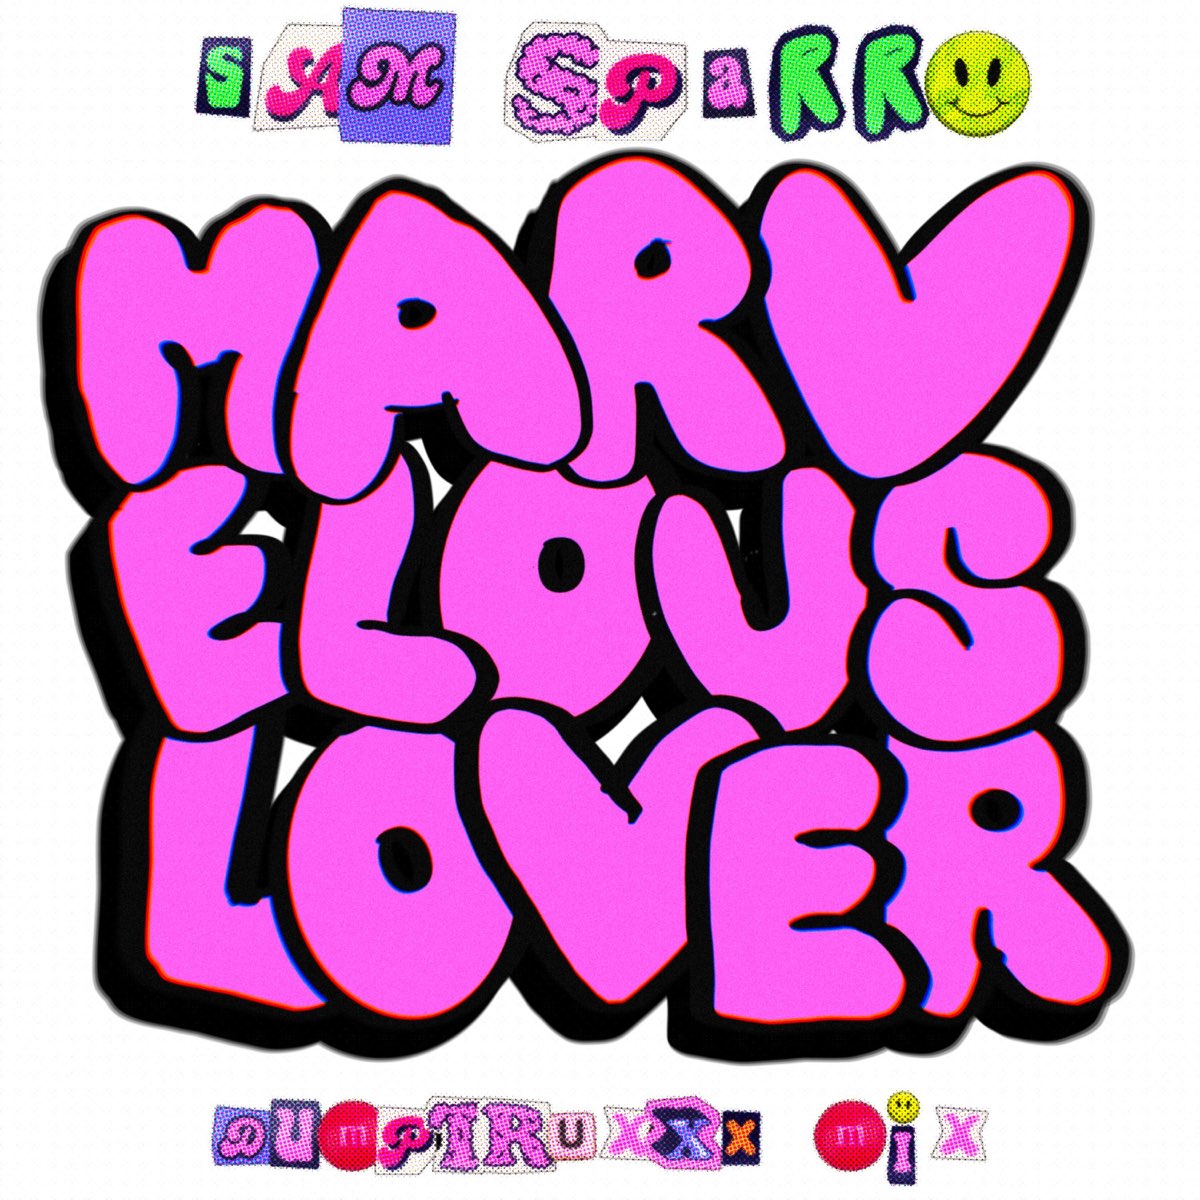 Sam Sparro Marvelous Lover cover artwork